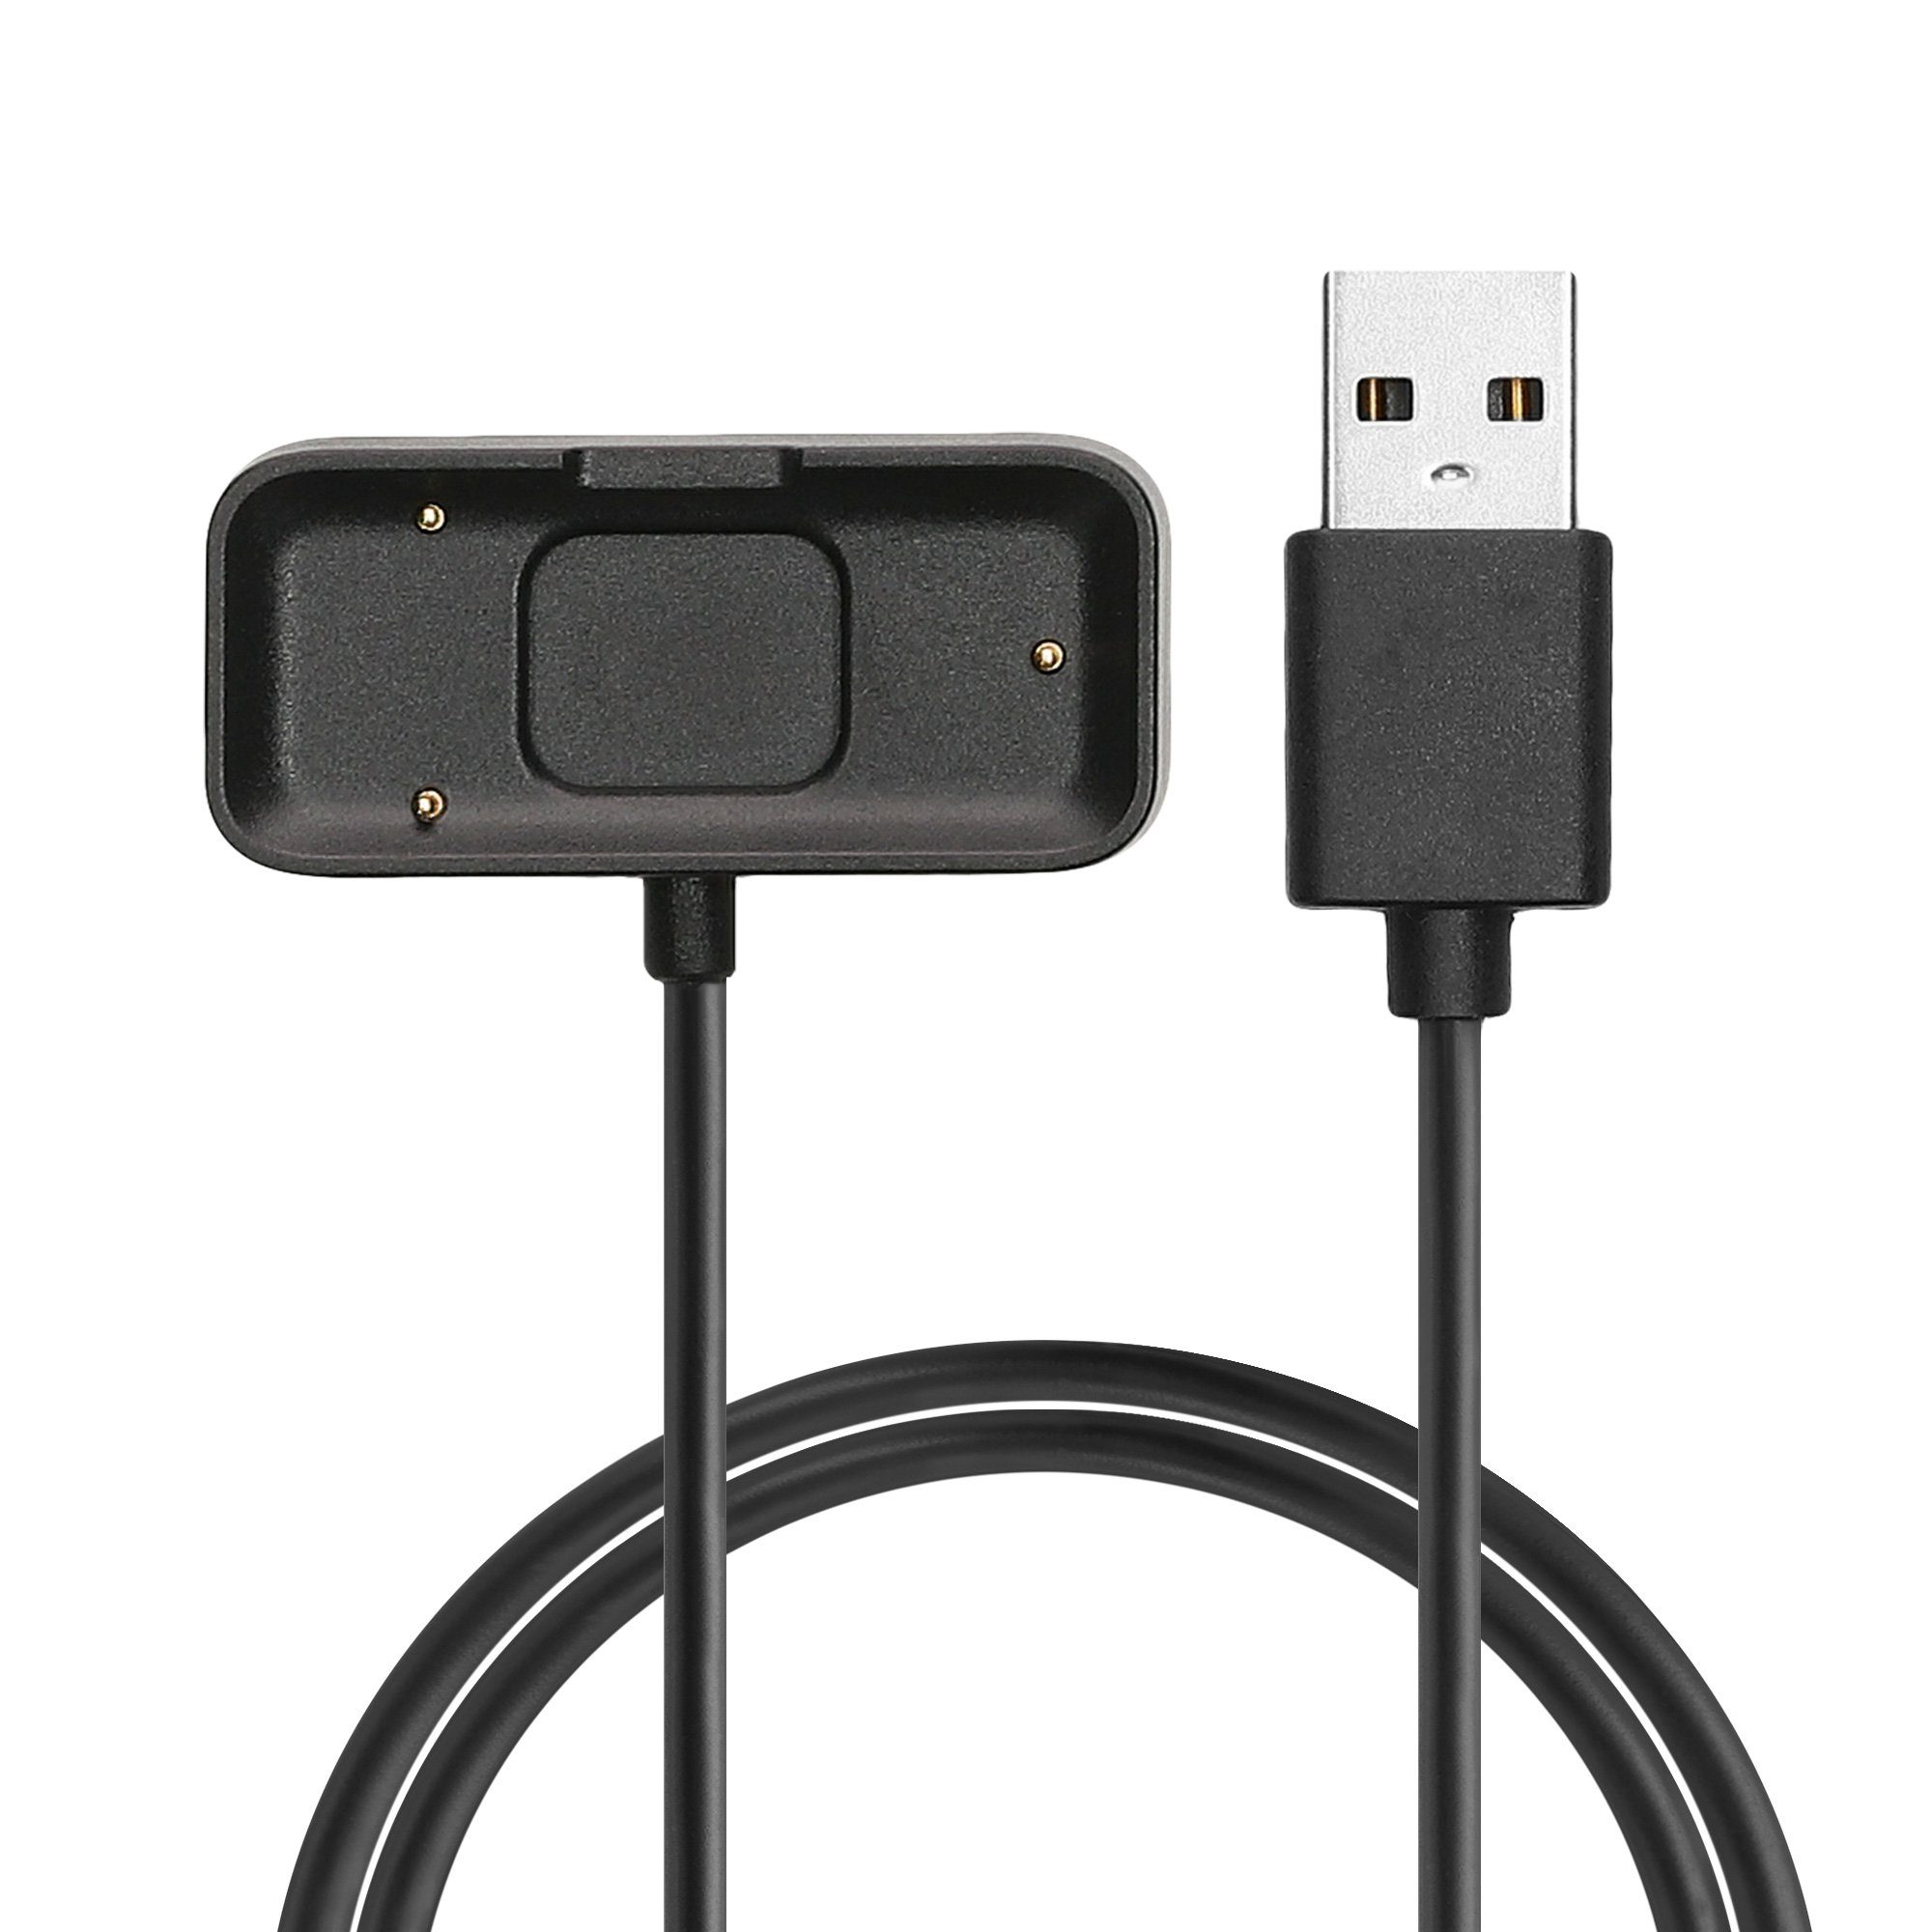 für Elektro-Kabel, USB Pulse Withings HR Kabel Watch - kwmobile Fitnesstracker Charger Ladekabel Ersatzkabel Smart - Aufladekabel